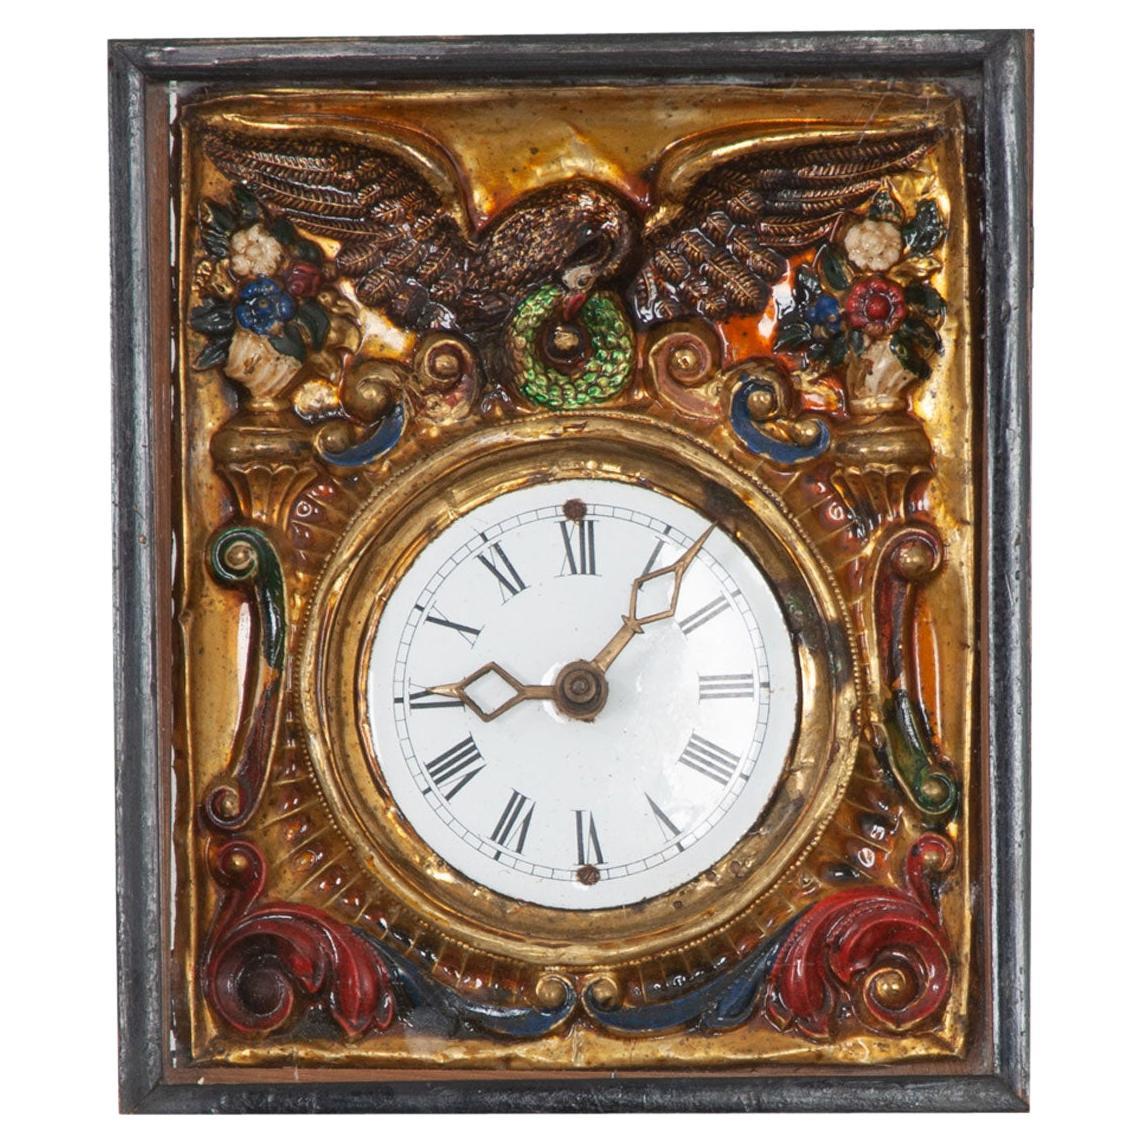 Horloge de la Forêt Noire allemande du 19e siècle encadrée sur 1stDibs